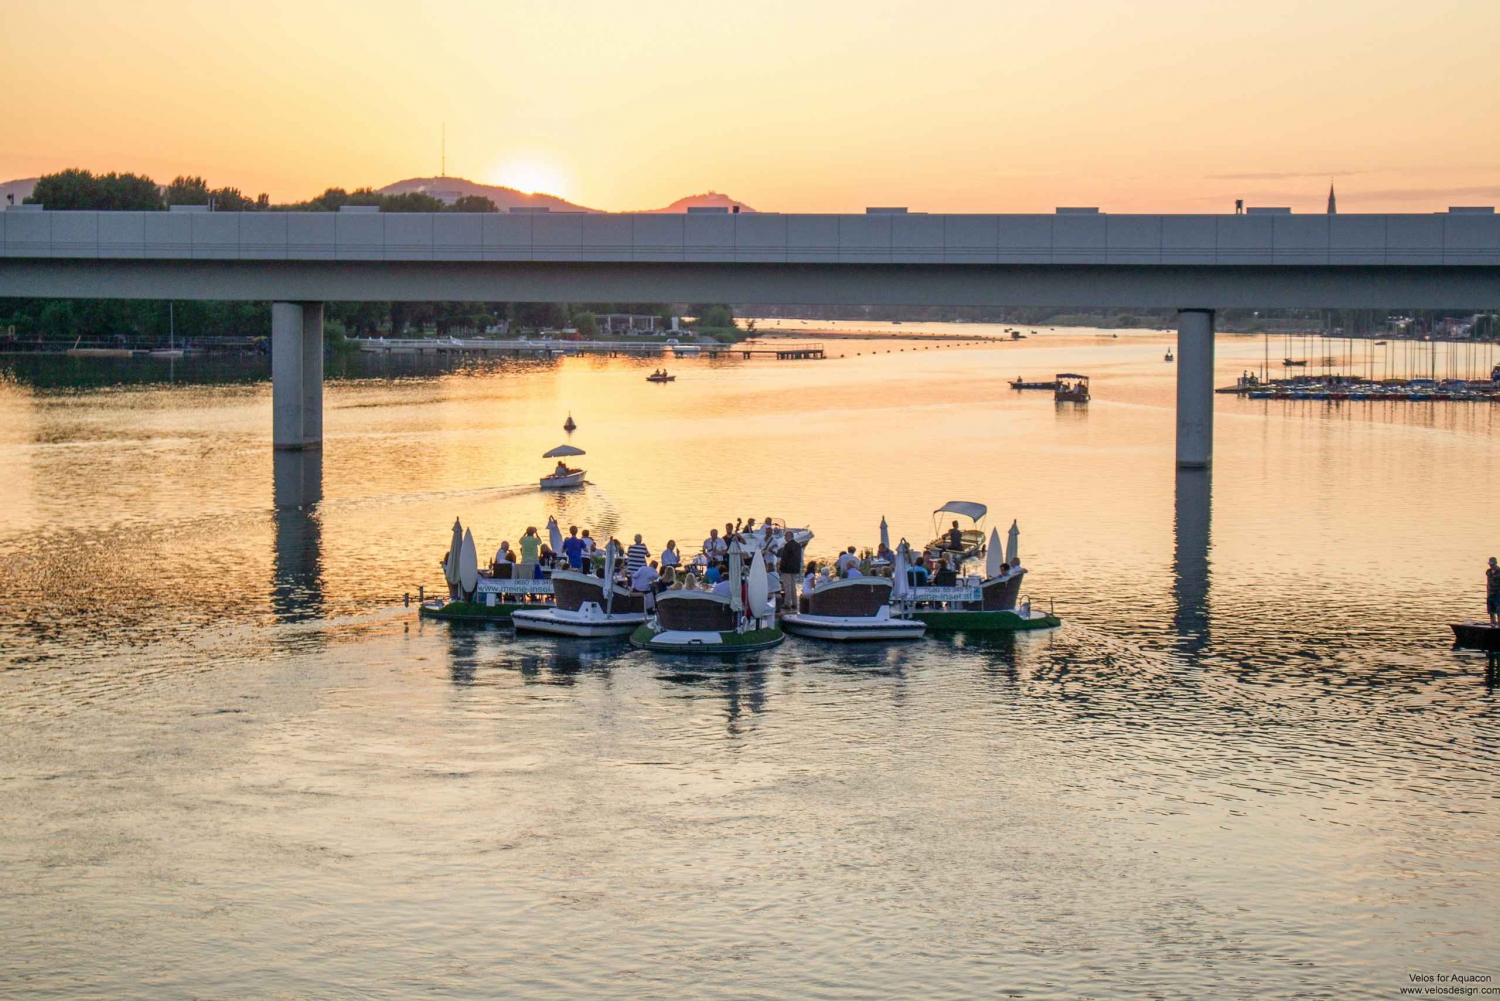 Wien: E-båtutleie med inkludert solnedgangsmiddag på Donau